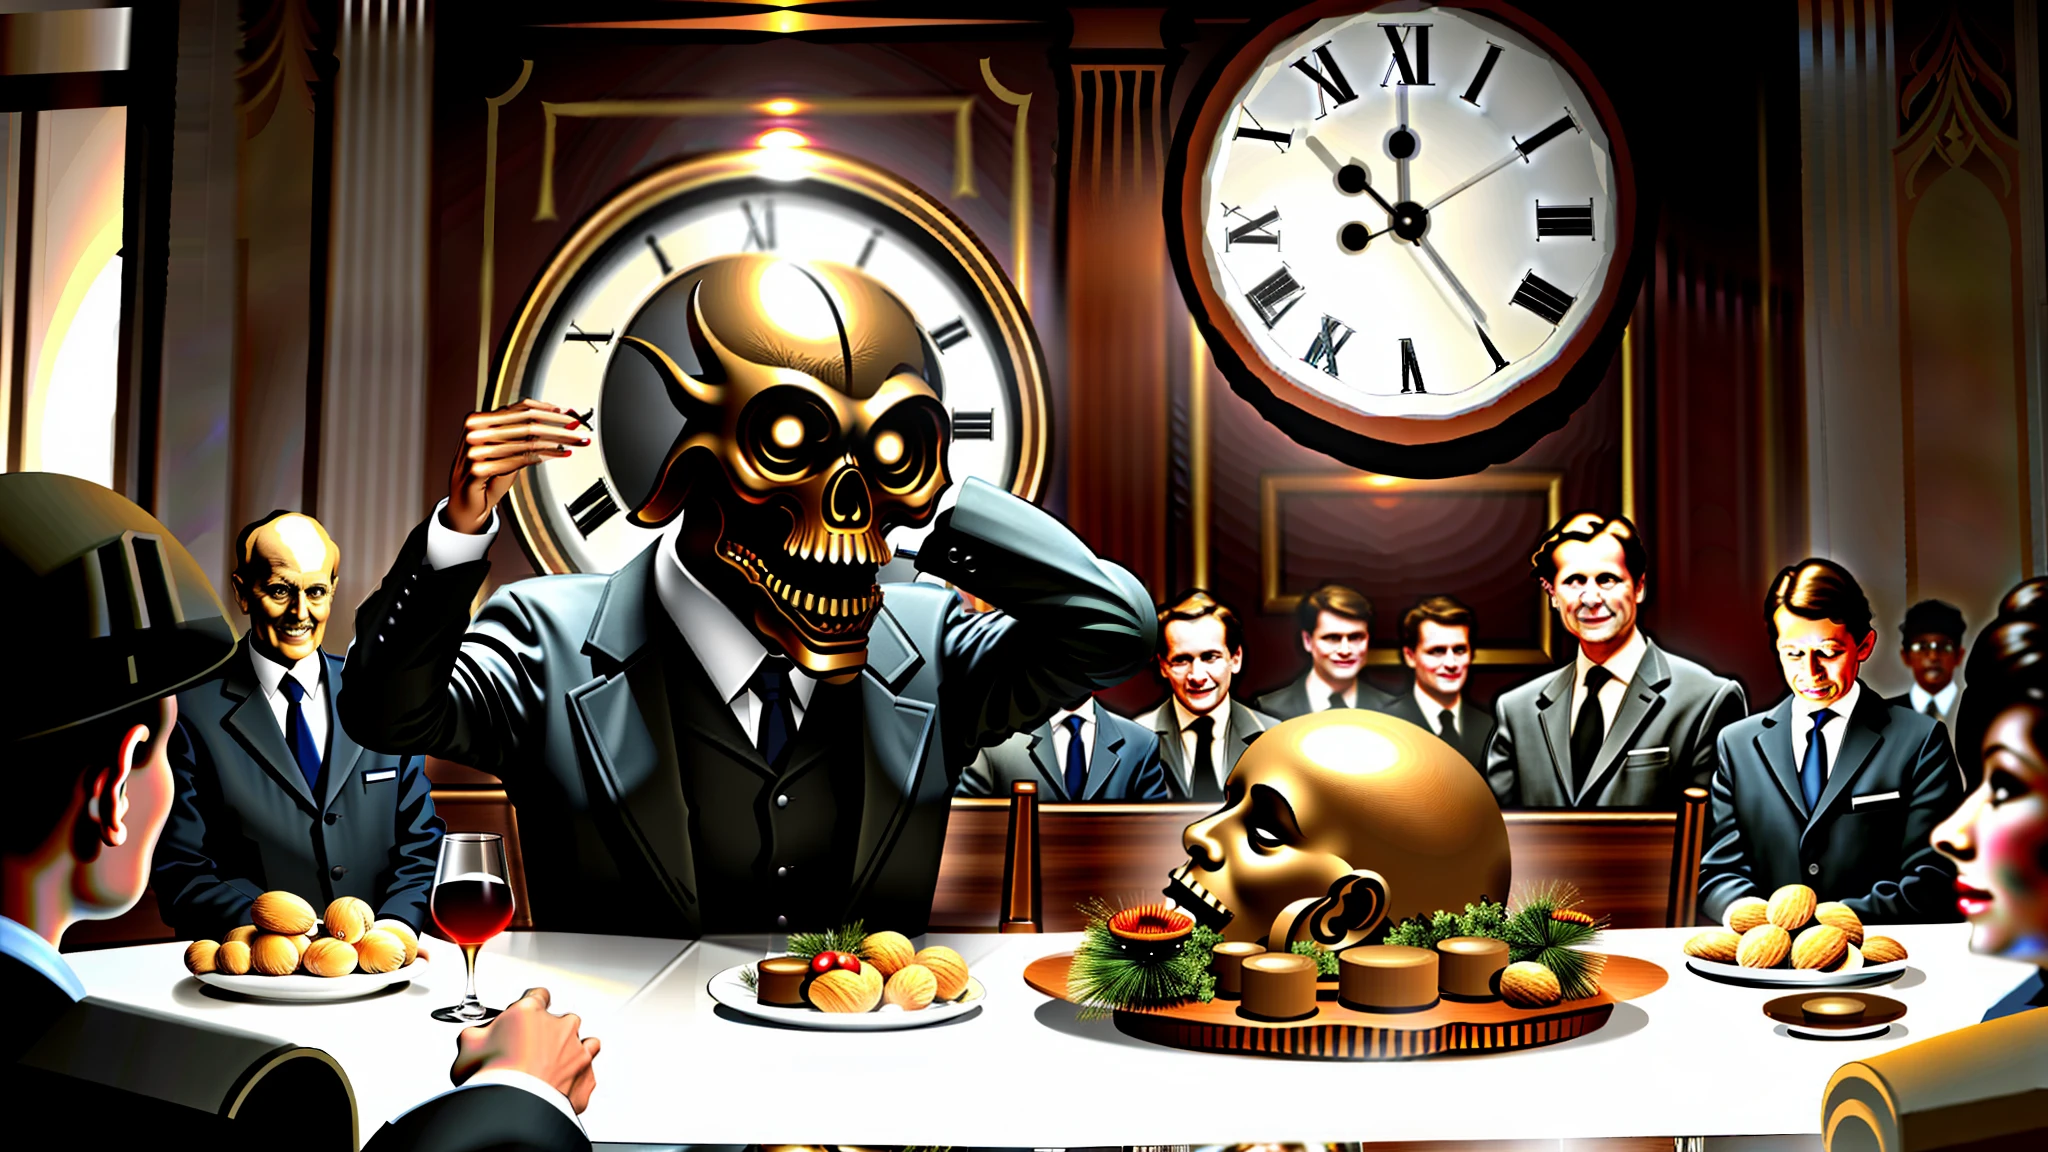 資產階級的, 在餐桌上吃人, 有錢人吃人體, 背景中有一個巨大的時鐘